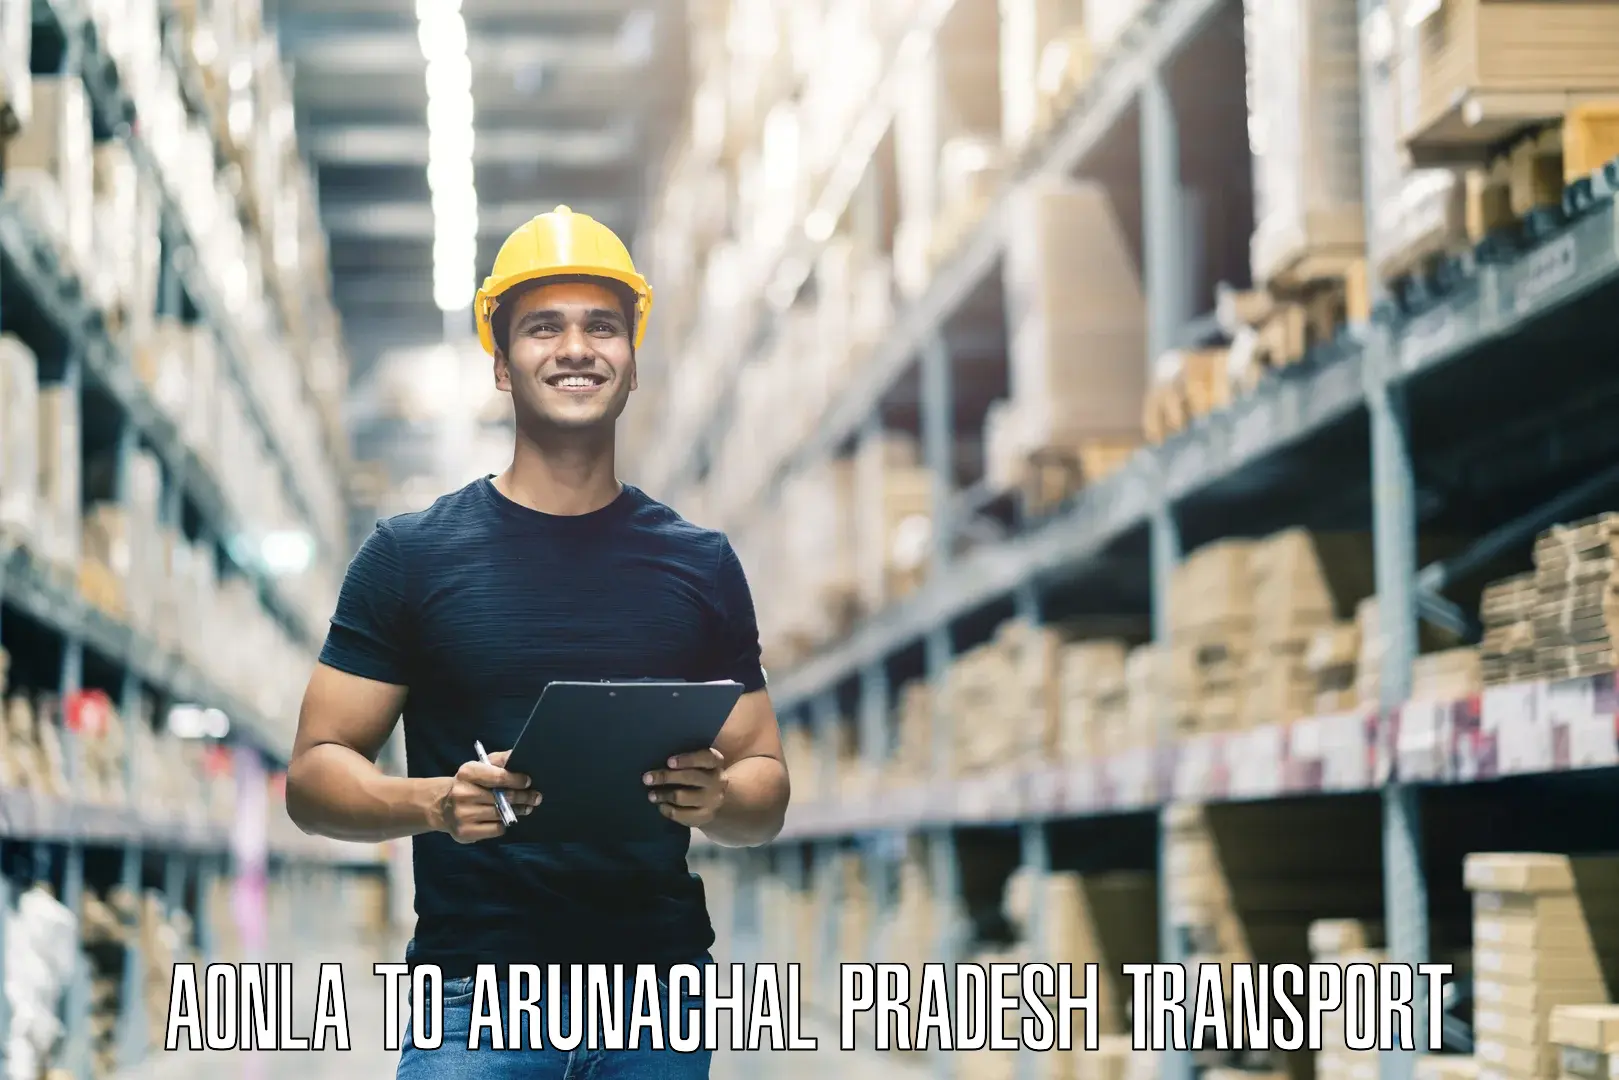 Online transport service Aonla to Arunachal Pradesh